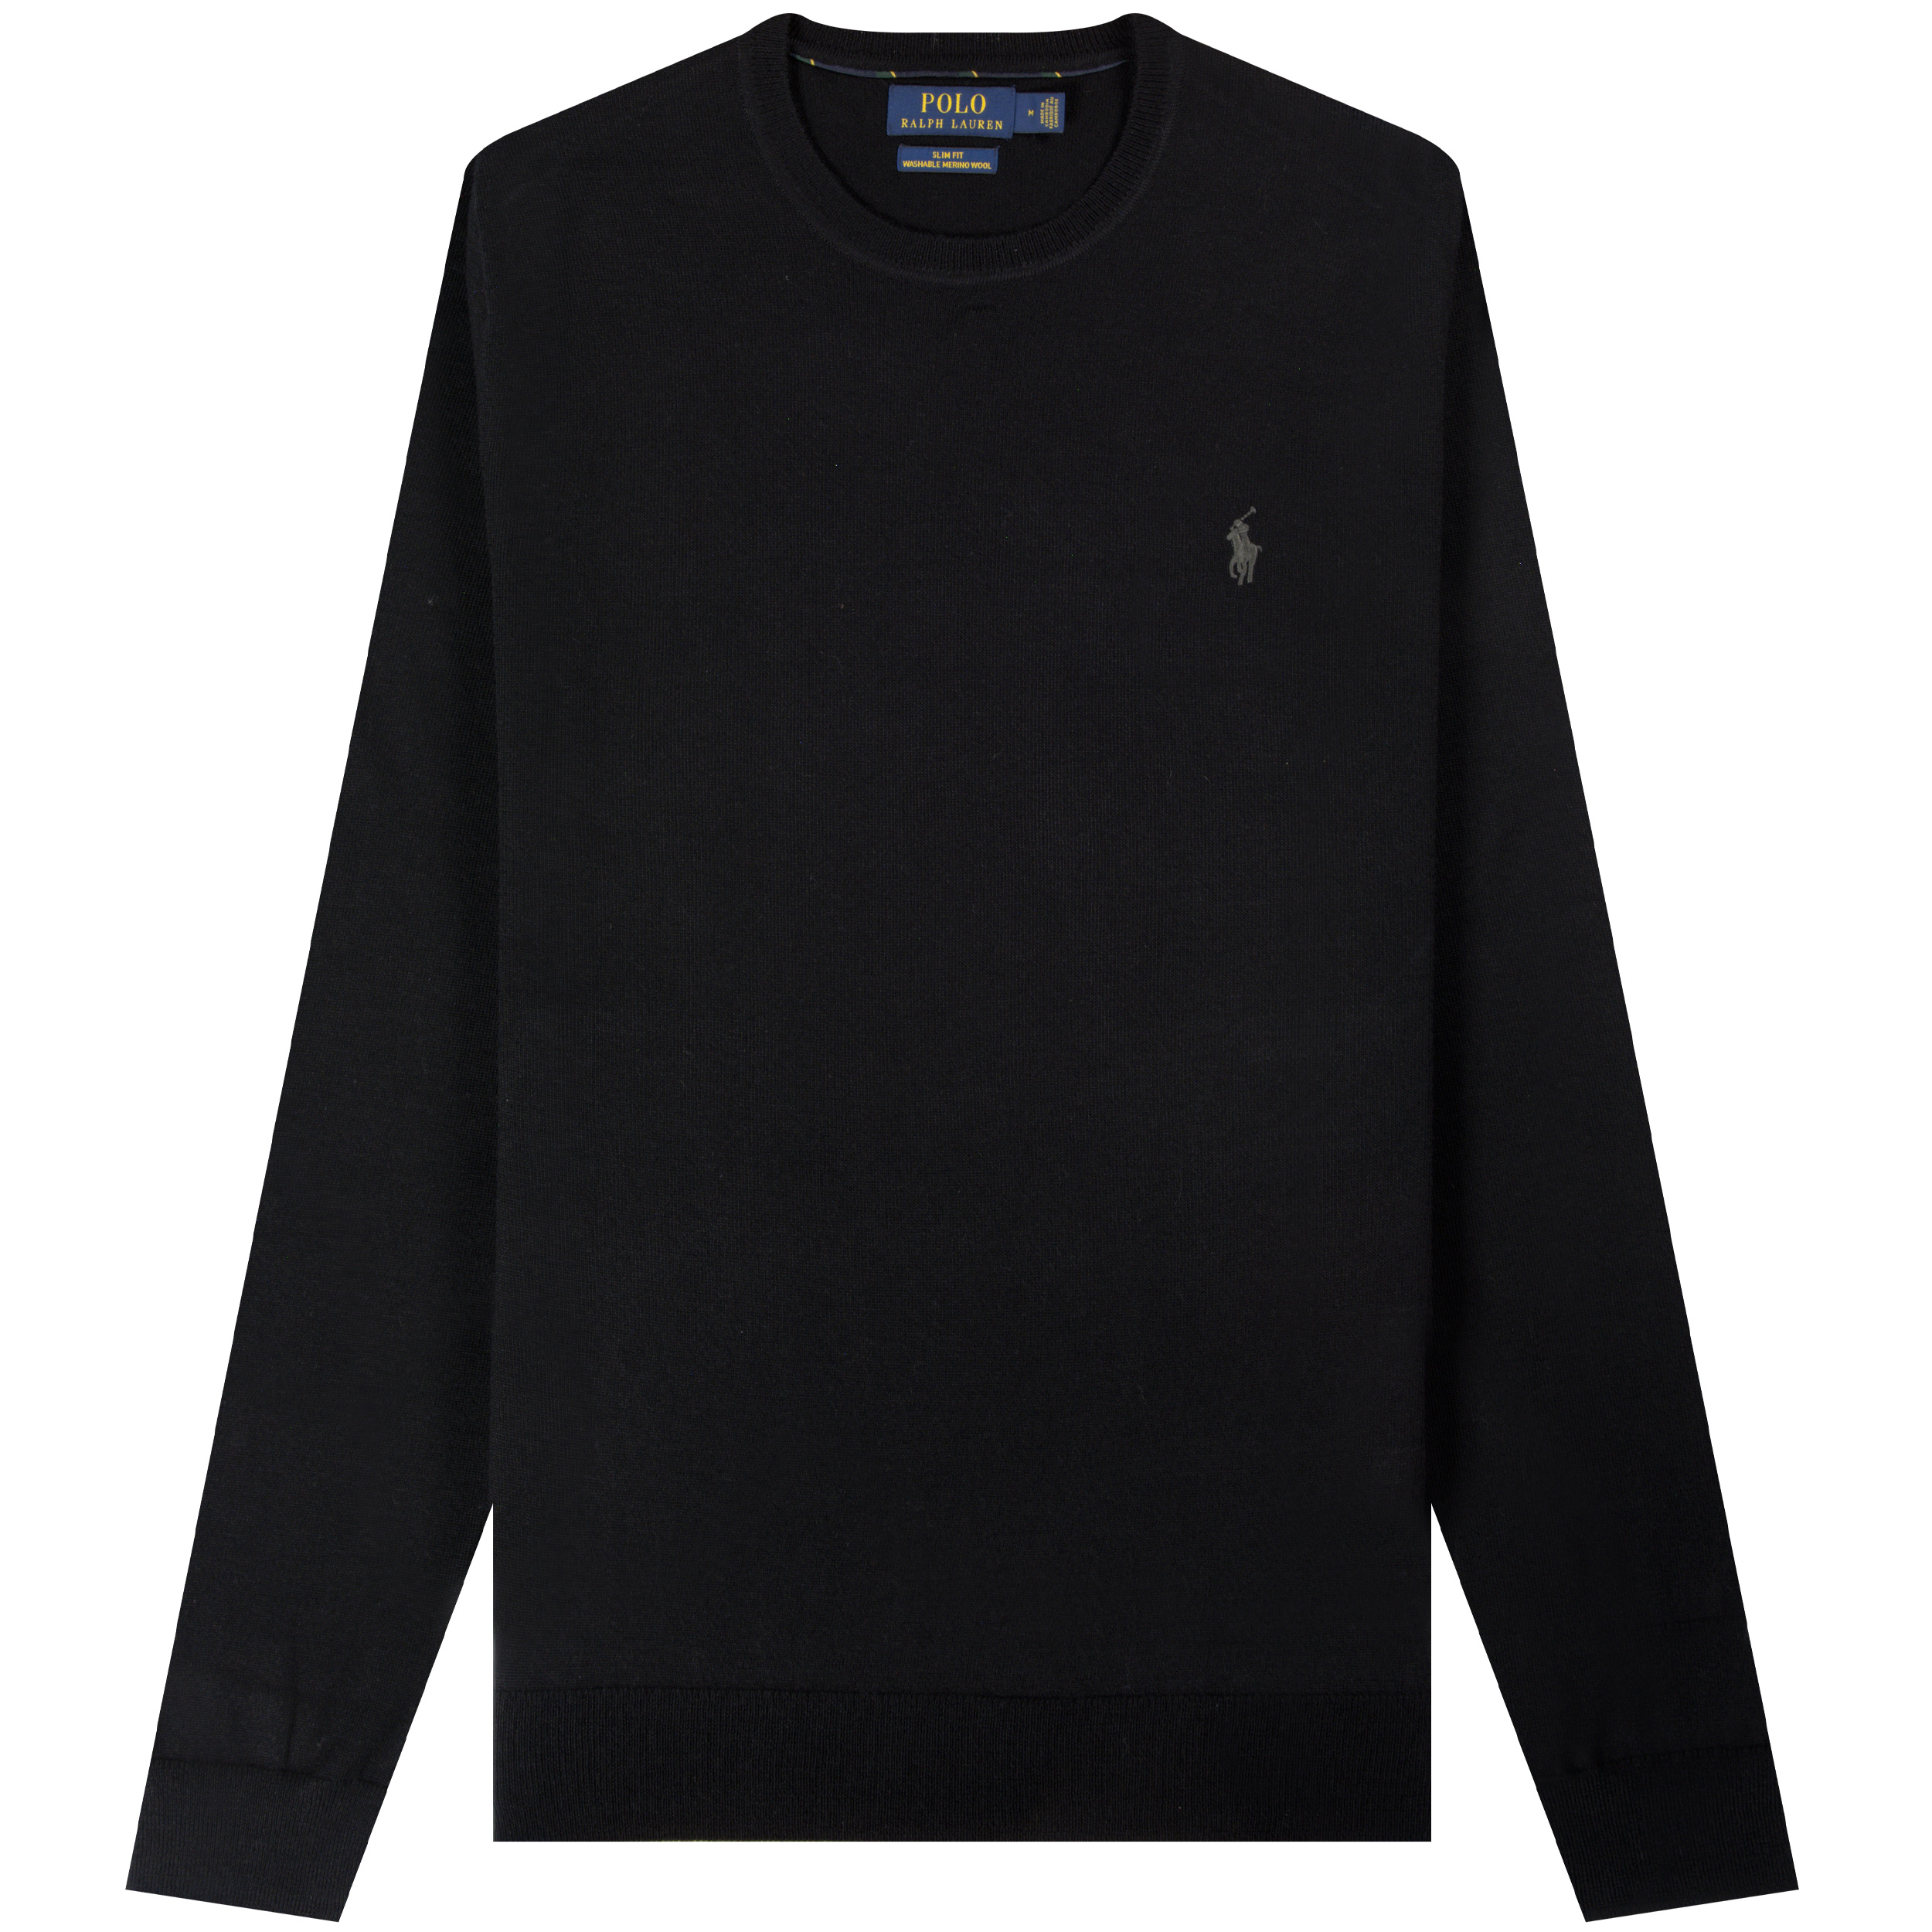 Polo Ralph Lauren ’LS Knit’ Crewneck Black